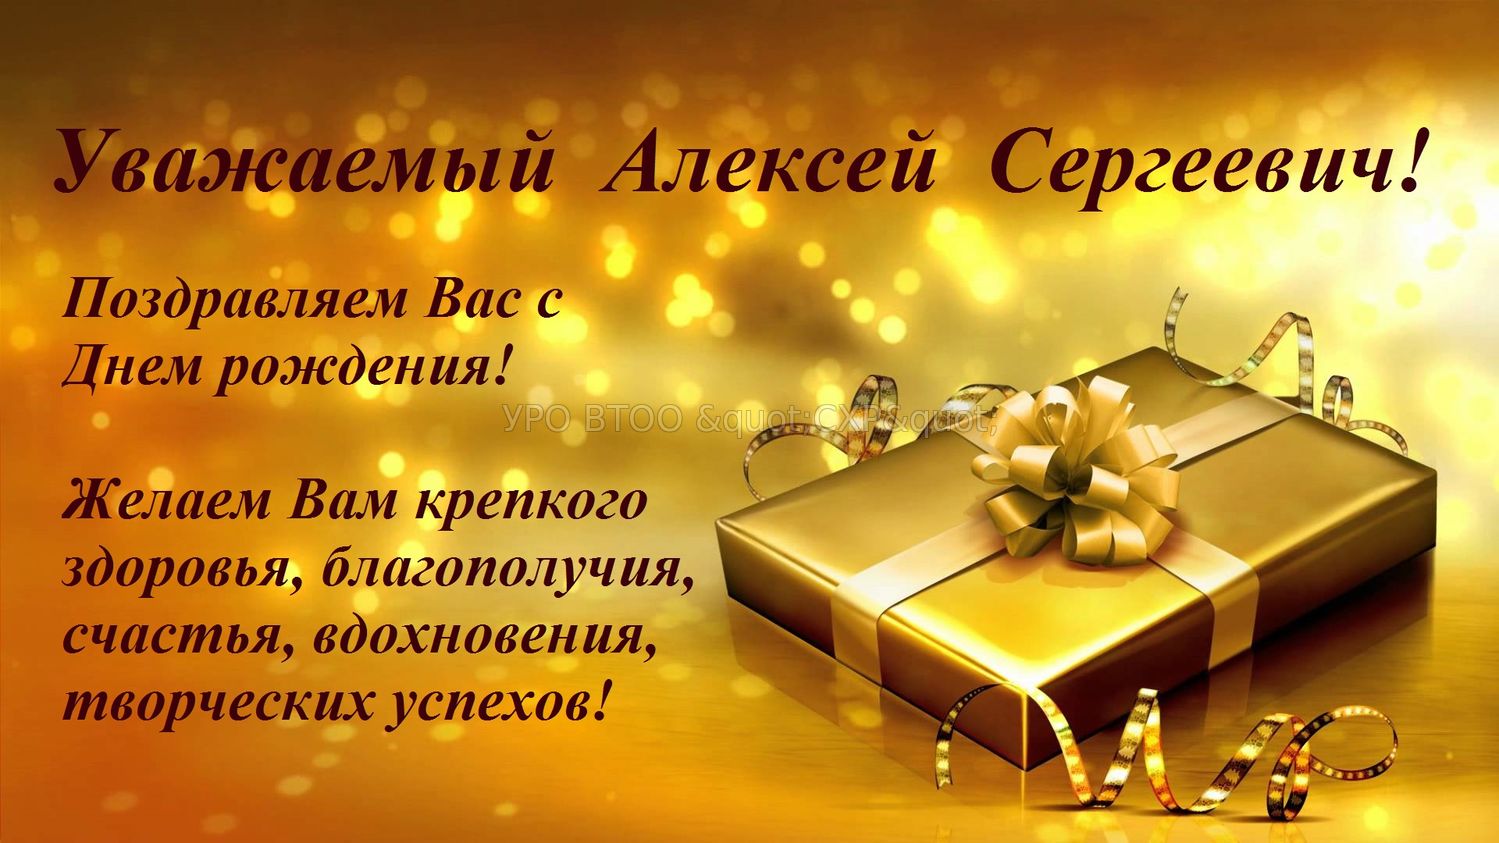 Поздравления С Днем Рождения Мальчика Алексея